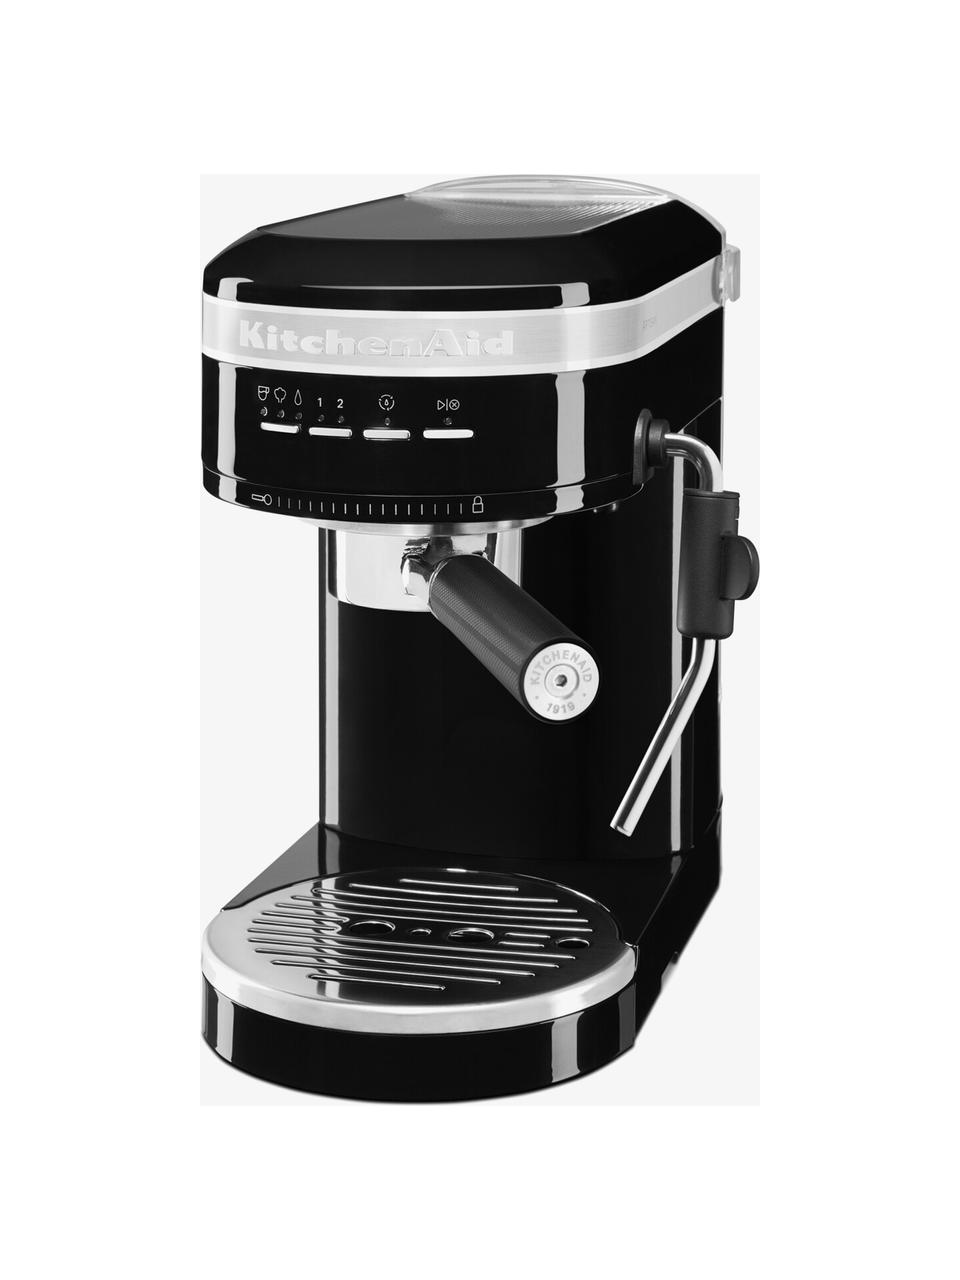 Espressomaschine Artisan, Gehäuse: Edelstahl, Schwarz, glänzend, B 34 x H 29 cm